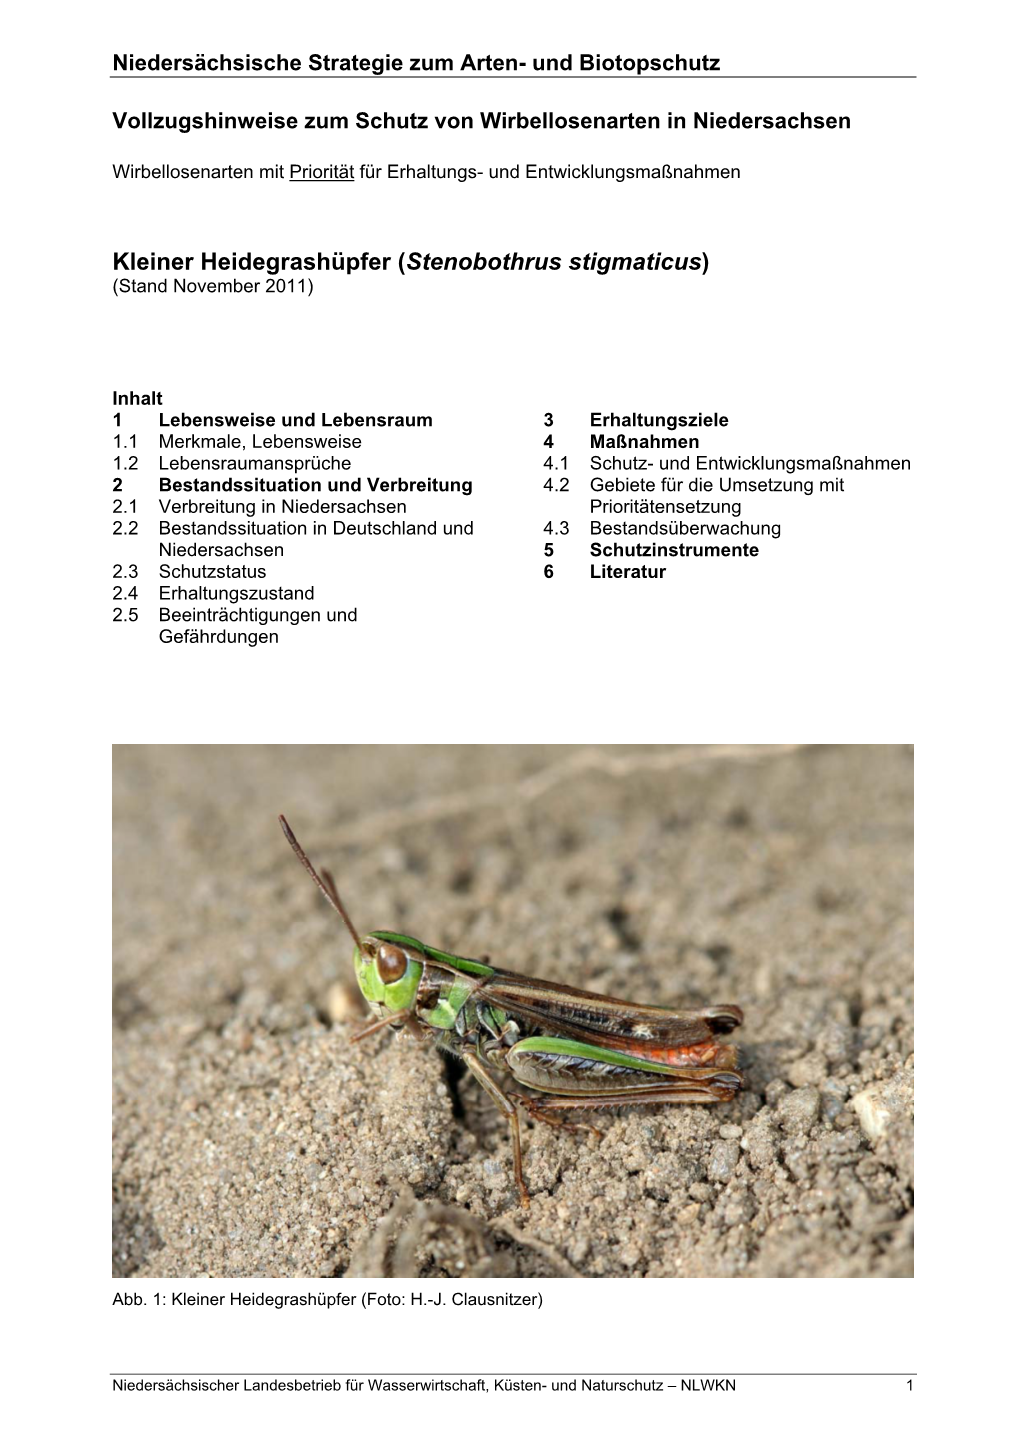 Kleiner Heidegrashüpfer (Stenobothrus Stigmaticus) (Stand November 2011)